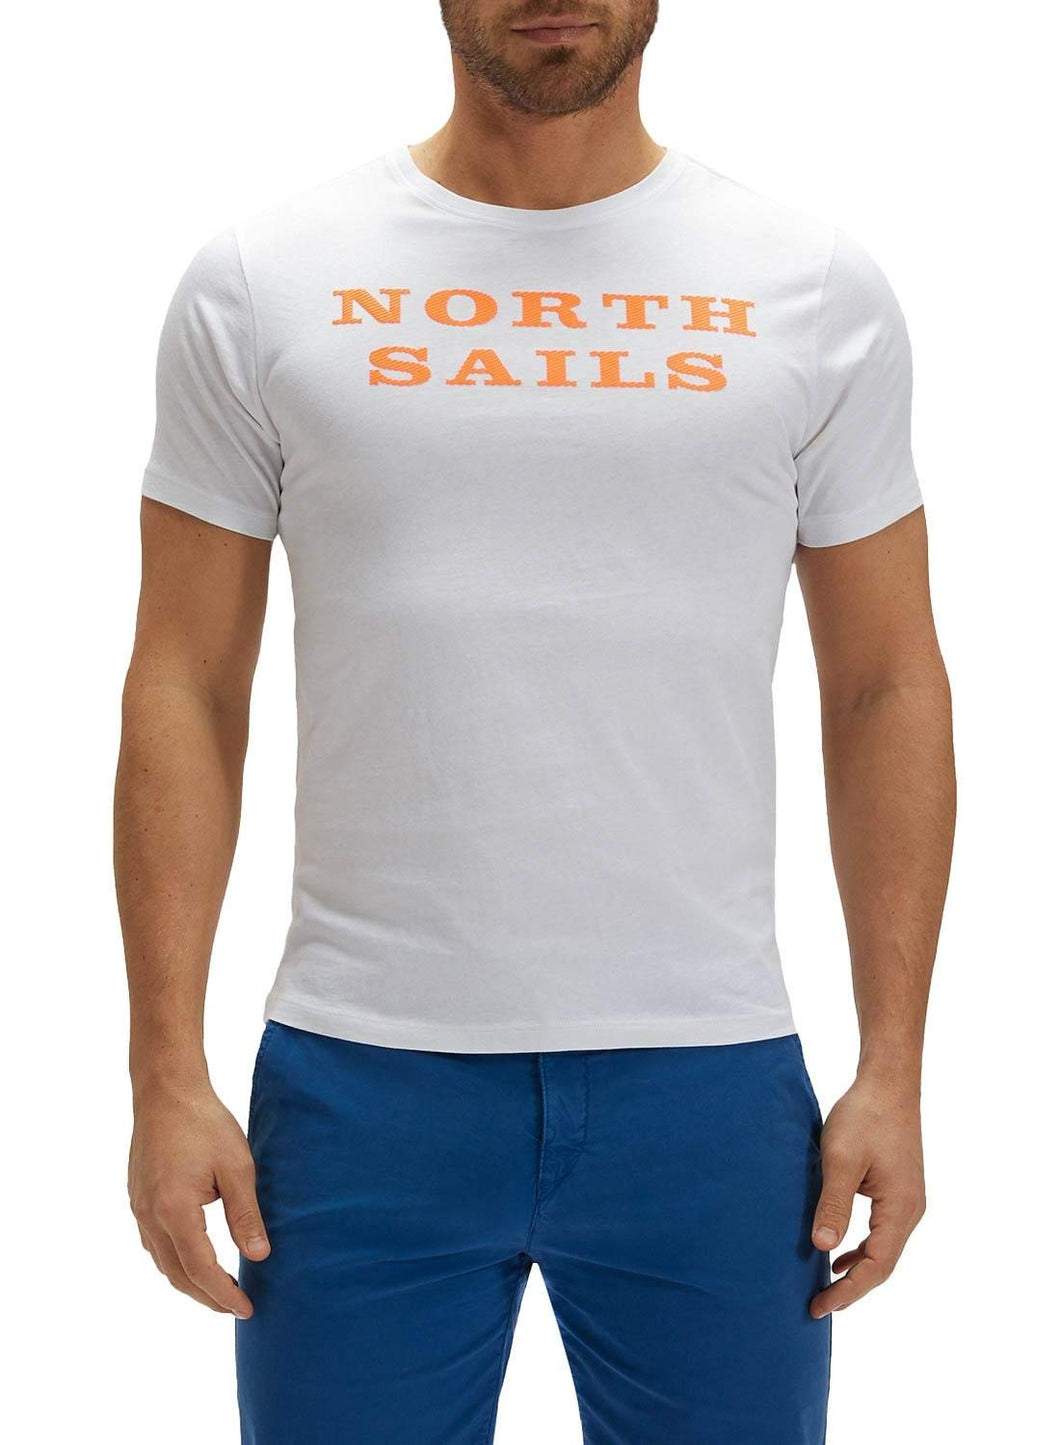 NORTH SAILS T-Shirt da Uomo in Jersey di Colore Bianco - 100% Cotone Biologico - vestibilità Regolare - Leggera con Girocollo e Maniche Corte - M